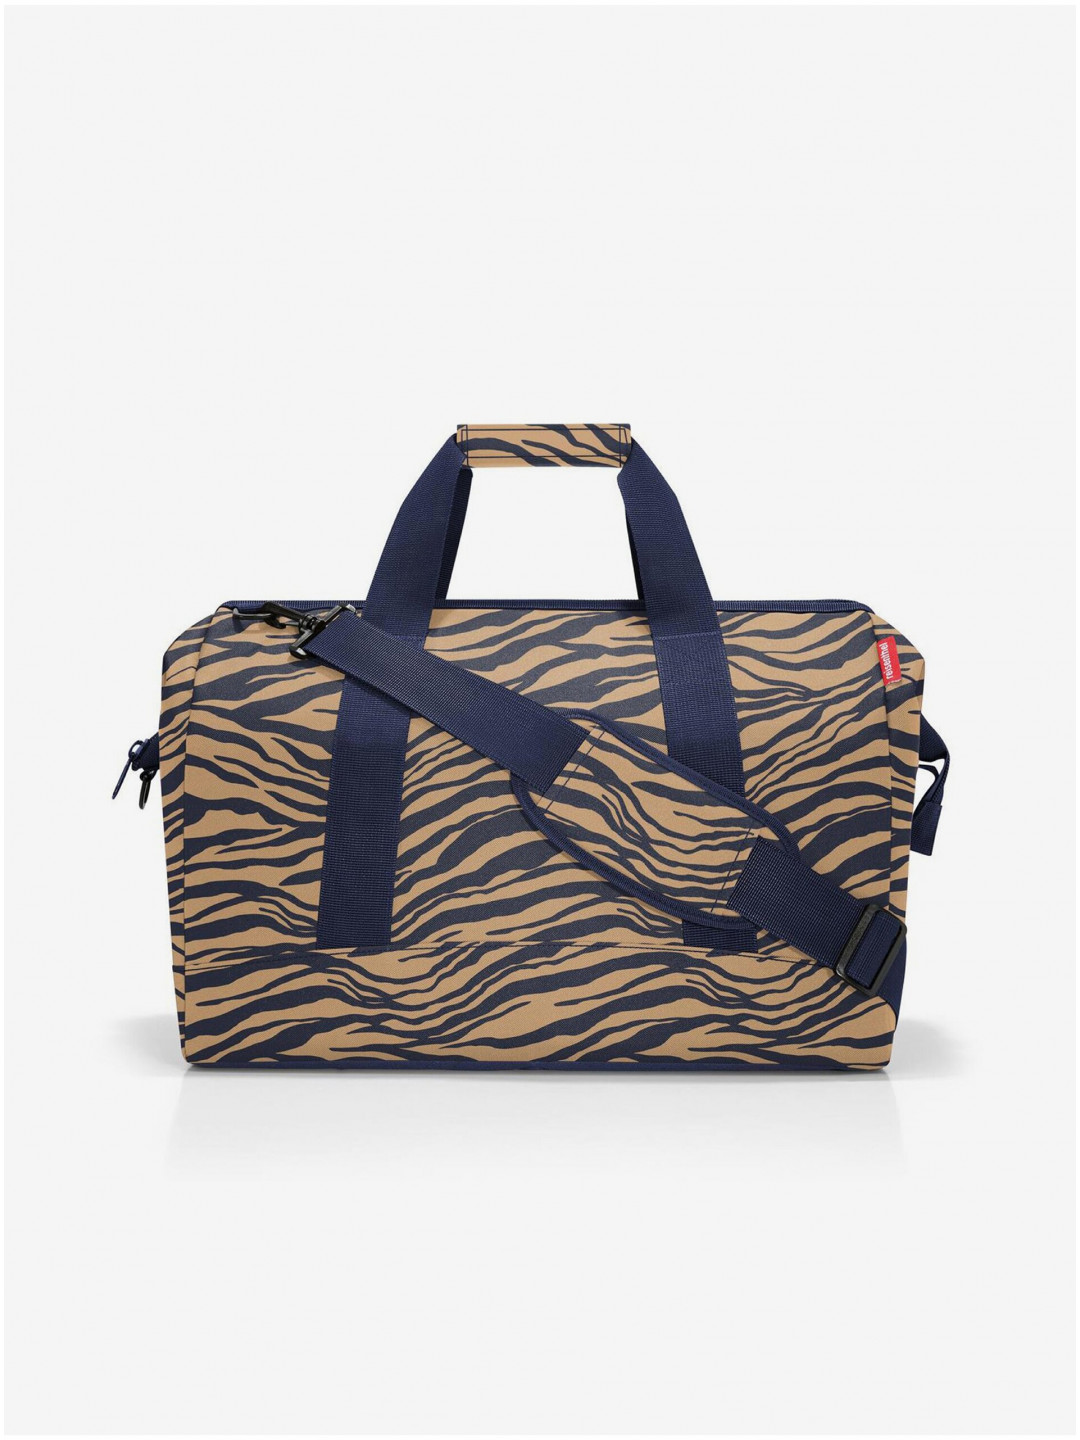 Modro-hnědá dámská cestovní taška se zvířecím vzorem Reisenthel Allrounder L Sumatra